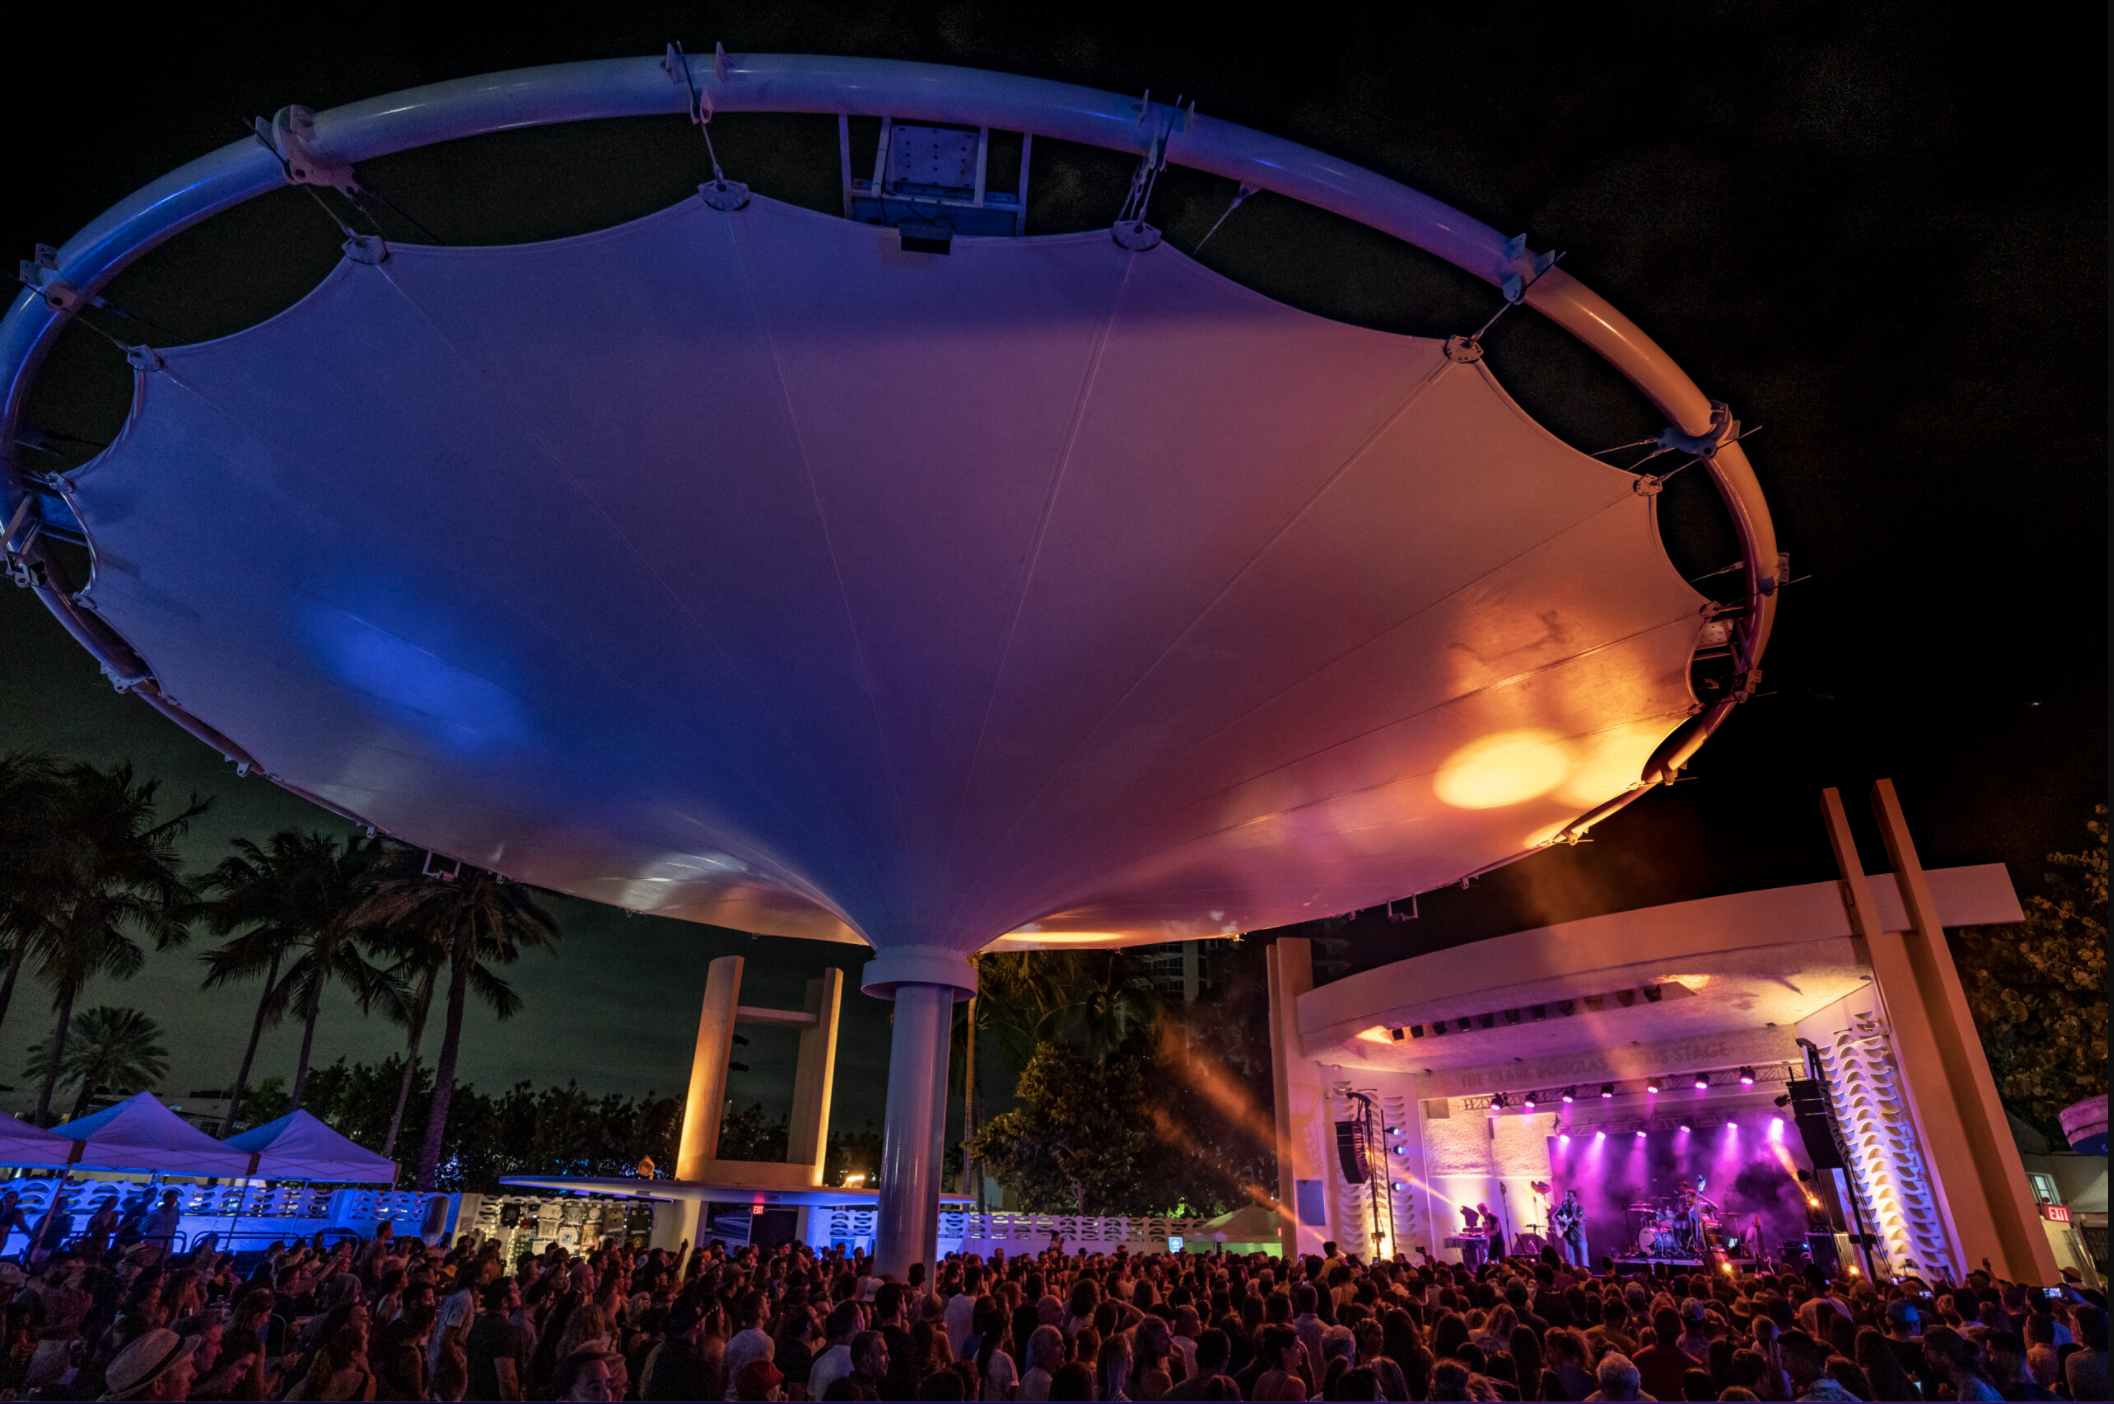 Este escenario con forma de concha es famoso por sus conciertos al aire libre. (Miami Beach Bandshell)